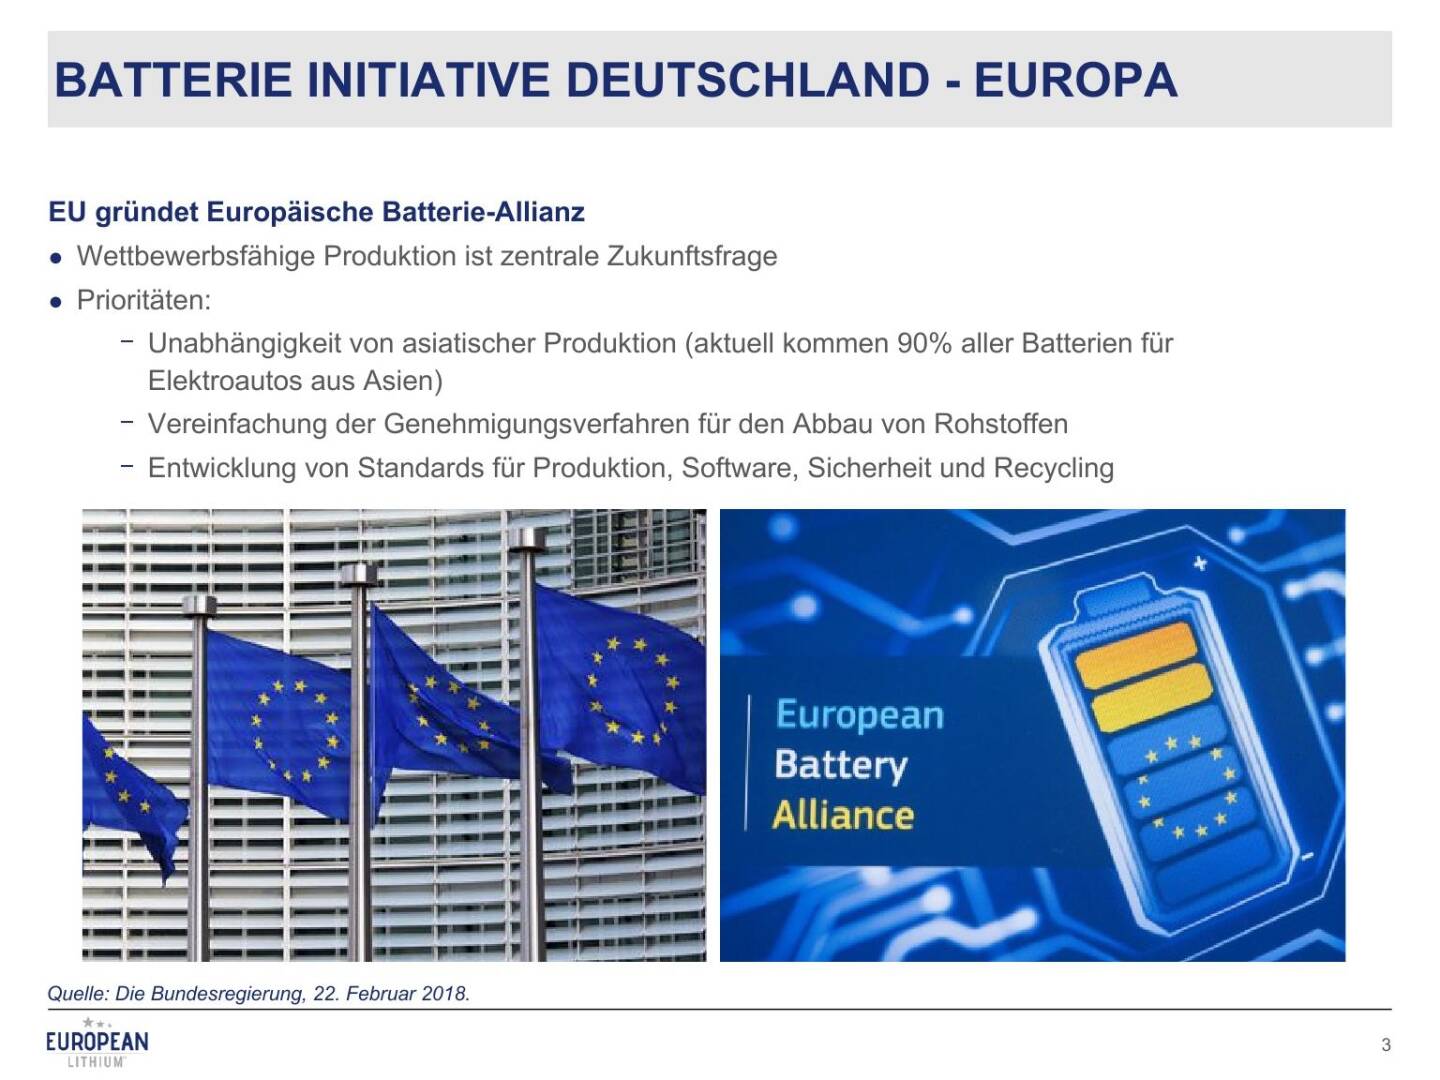 Präsentation European Lithium - Batterie Initiative Deutschland - Europa